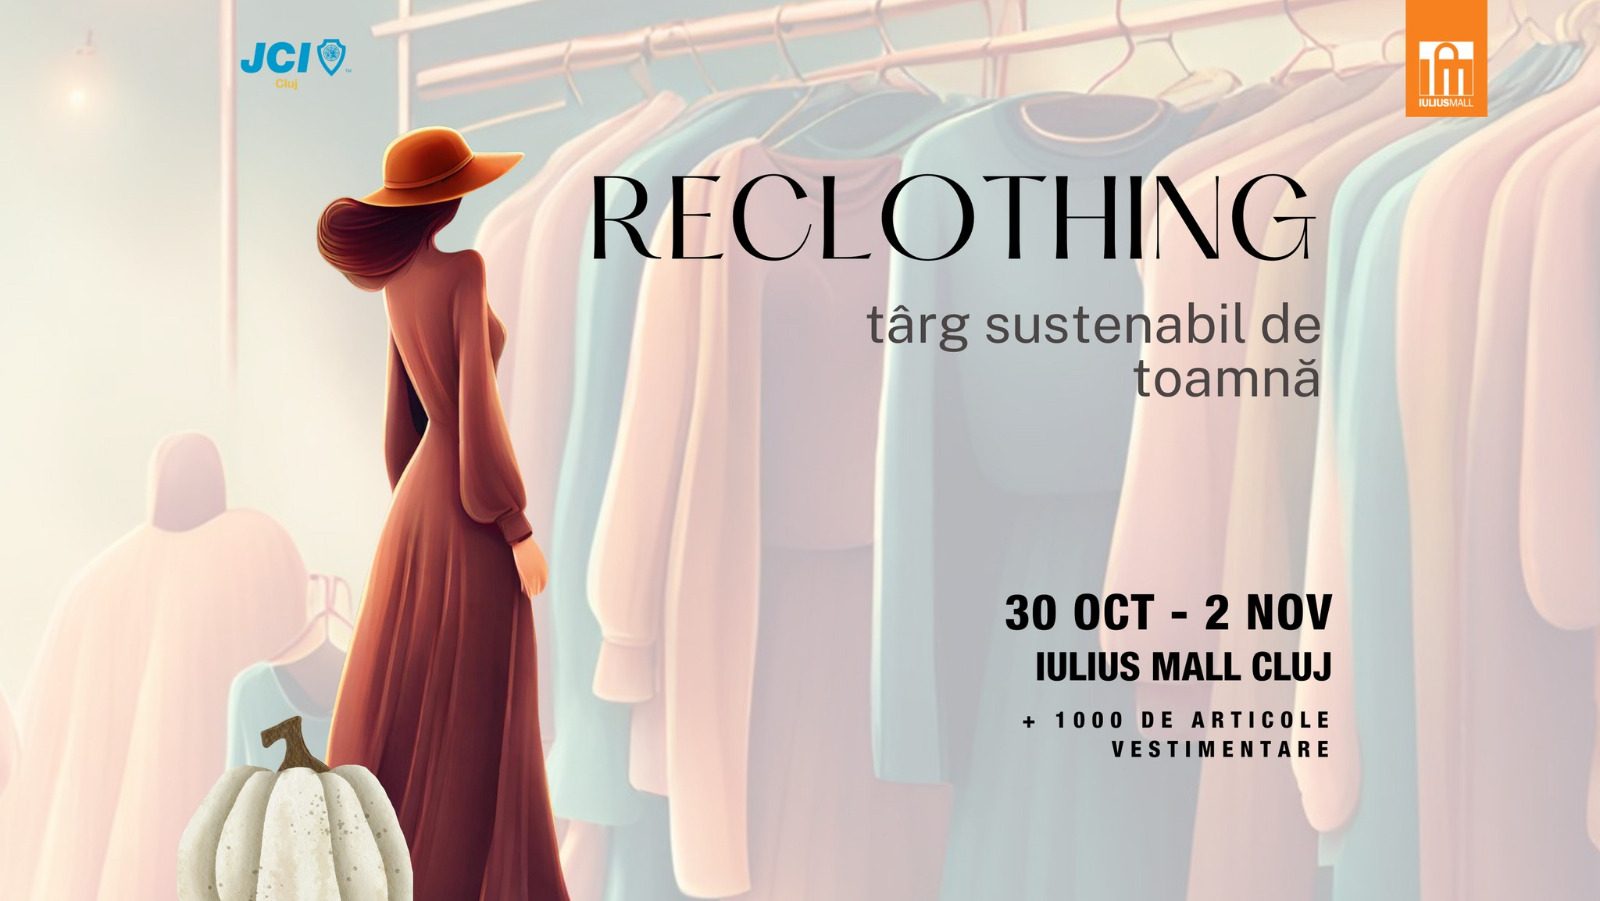 A început Reclothing – târgul sustenabil de toamnă din Iulius Mall Cluj. Vino să-ți reîmprospătezi garderoba și să faci o faptă bună! 